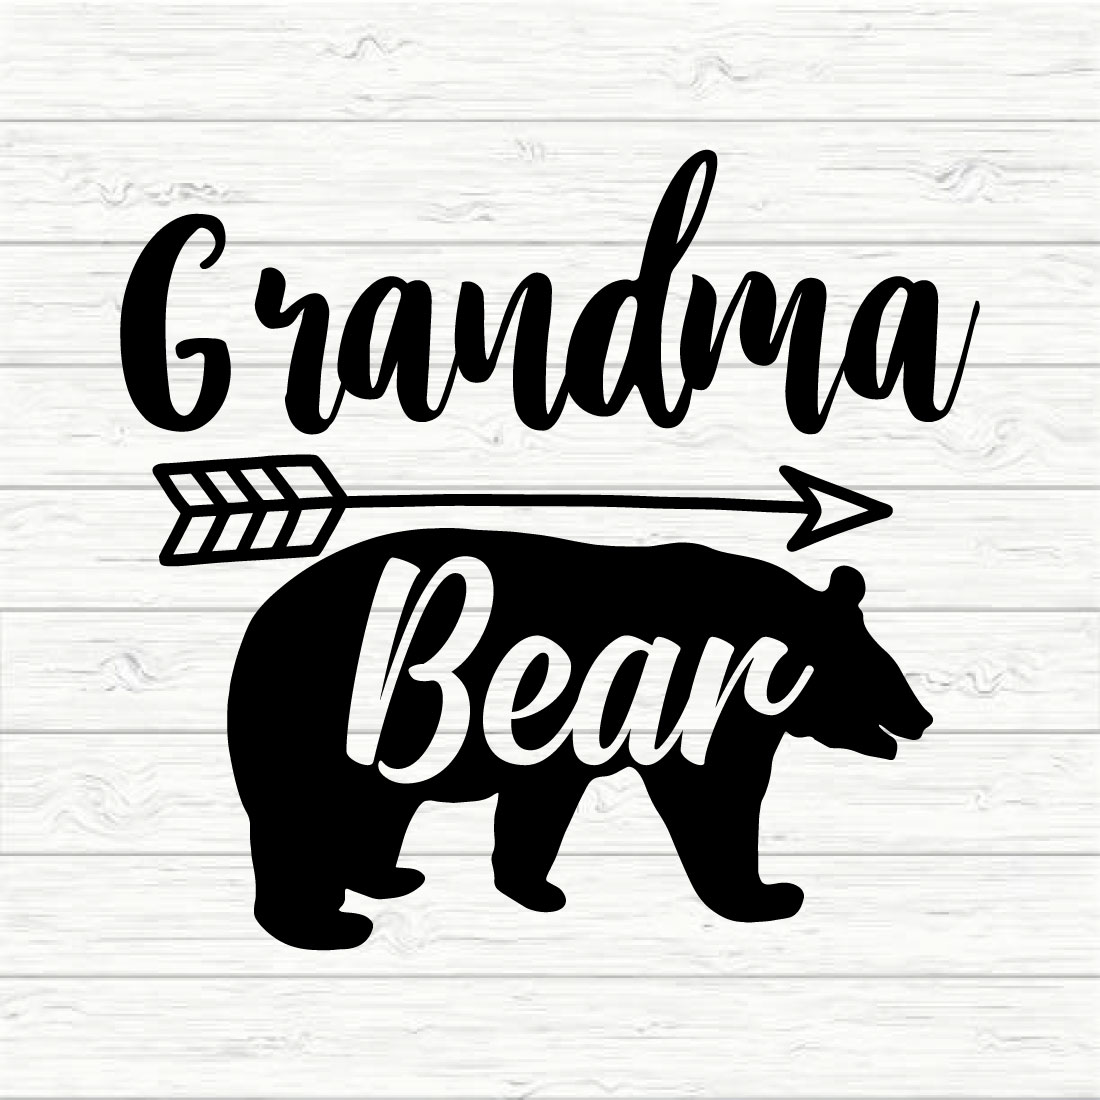 Grandma Bear preview image.